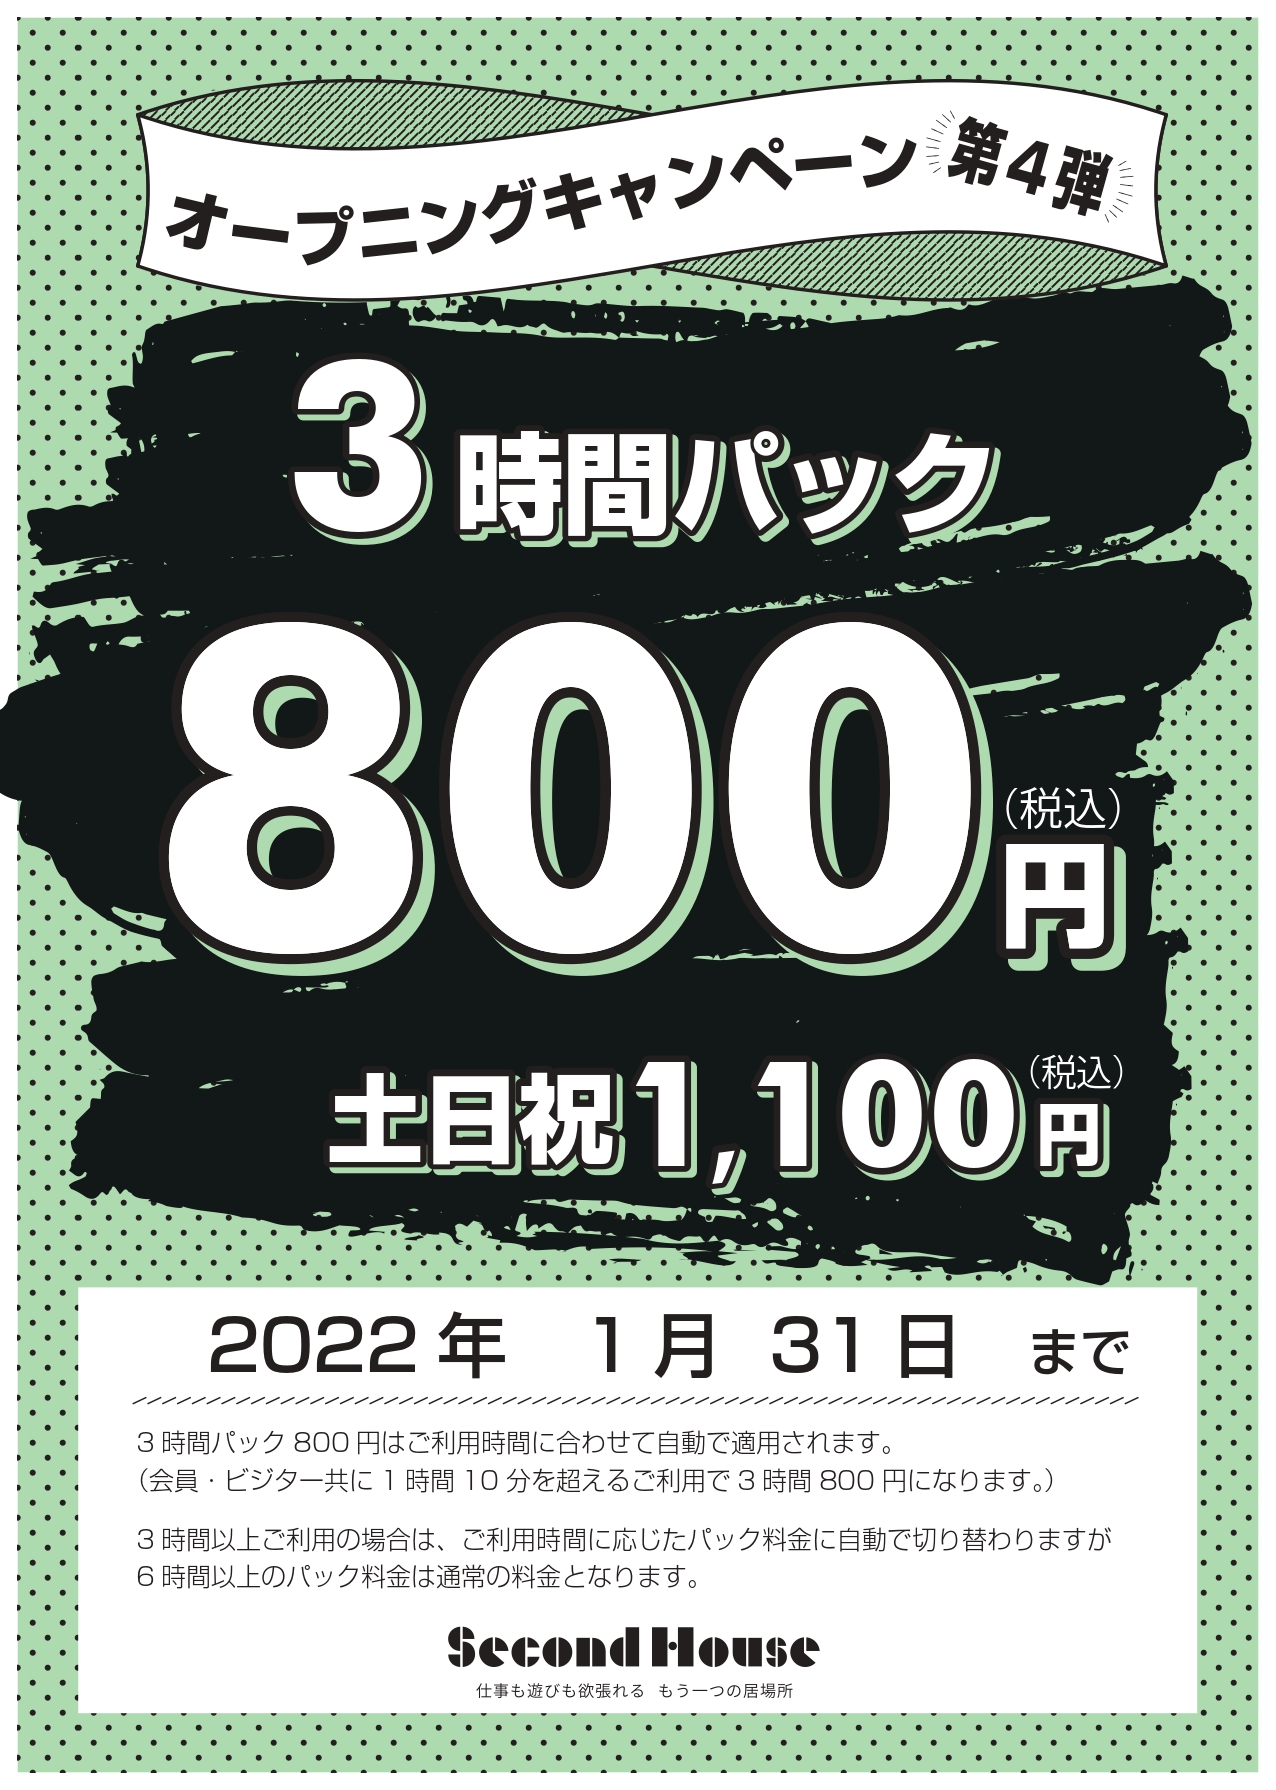 3時間パック800円